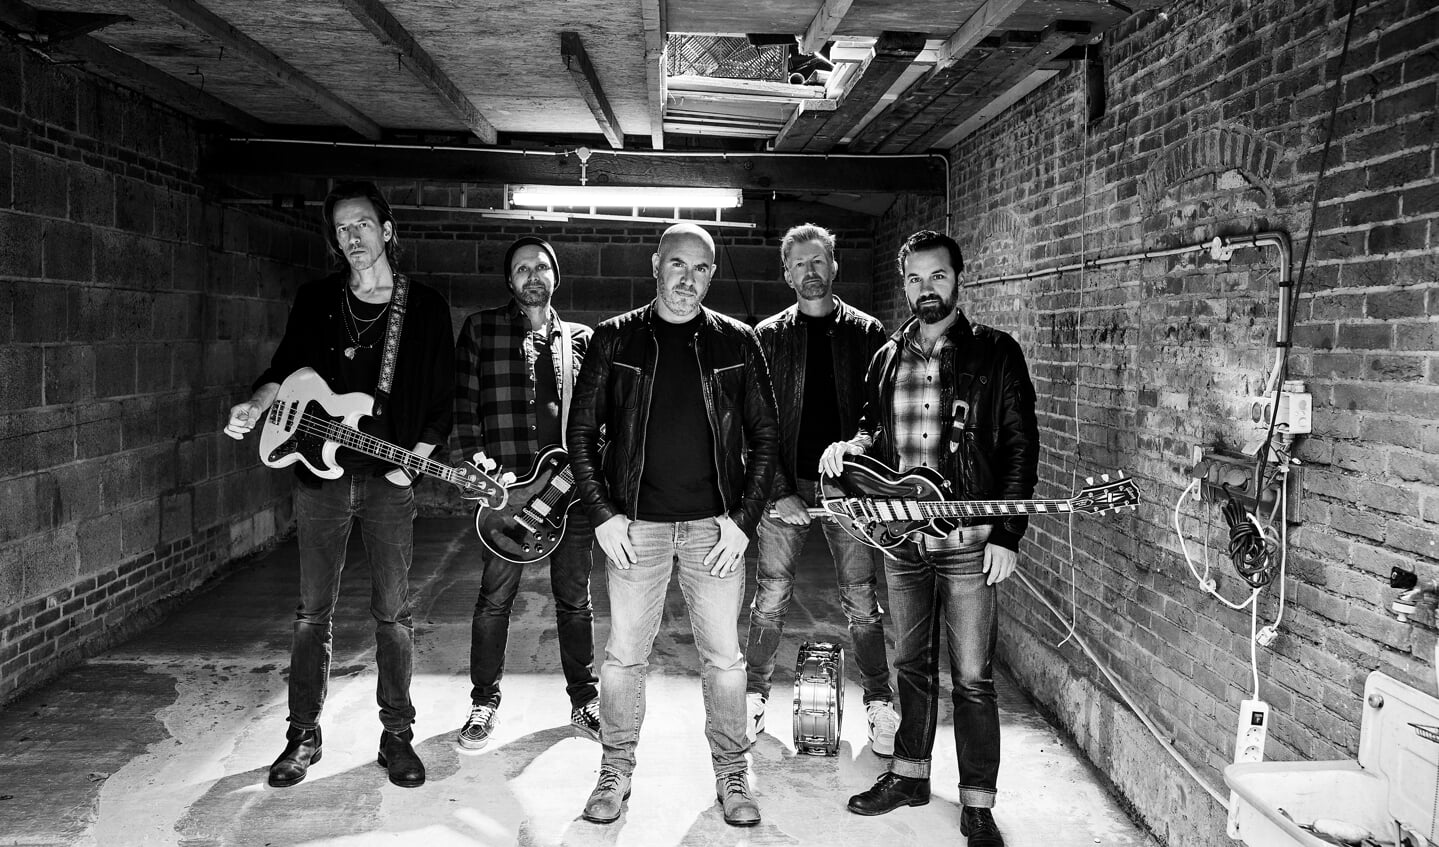 Jeroen van Koningsbrugge sings Pearl Jam